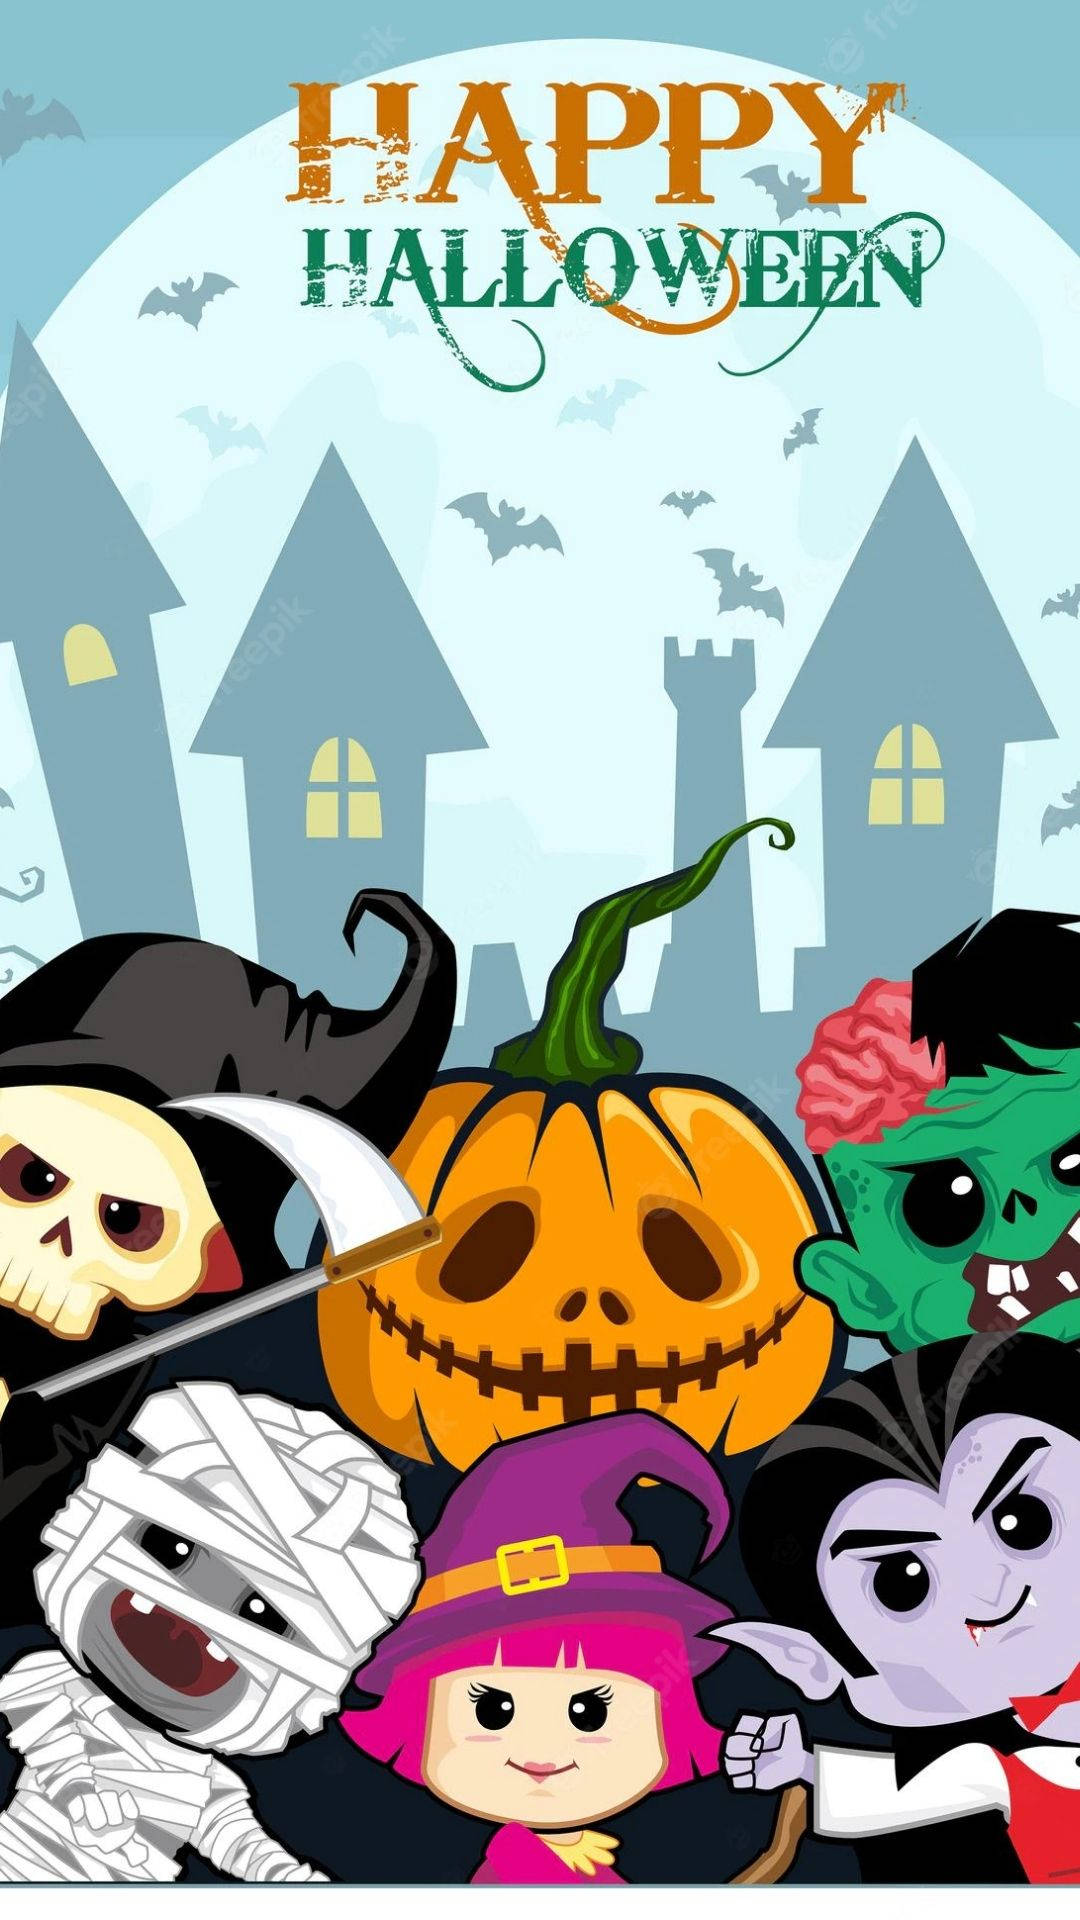 Peeking Cartoon Halloween Characters